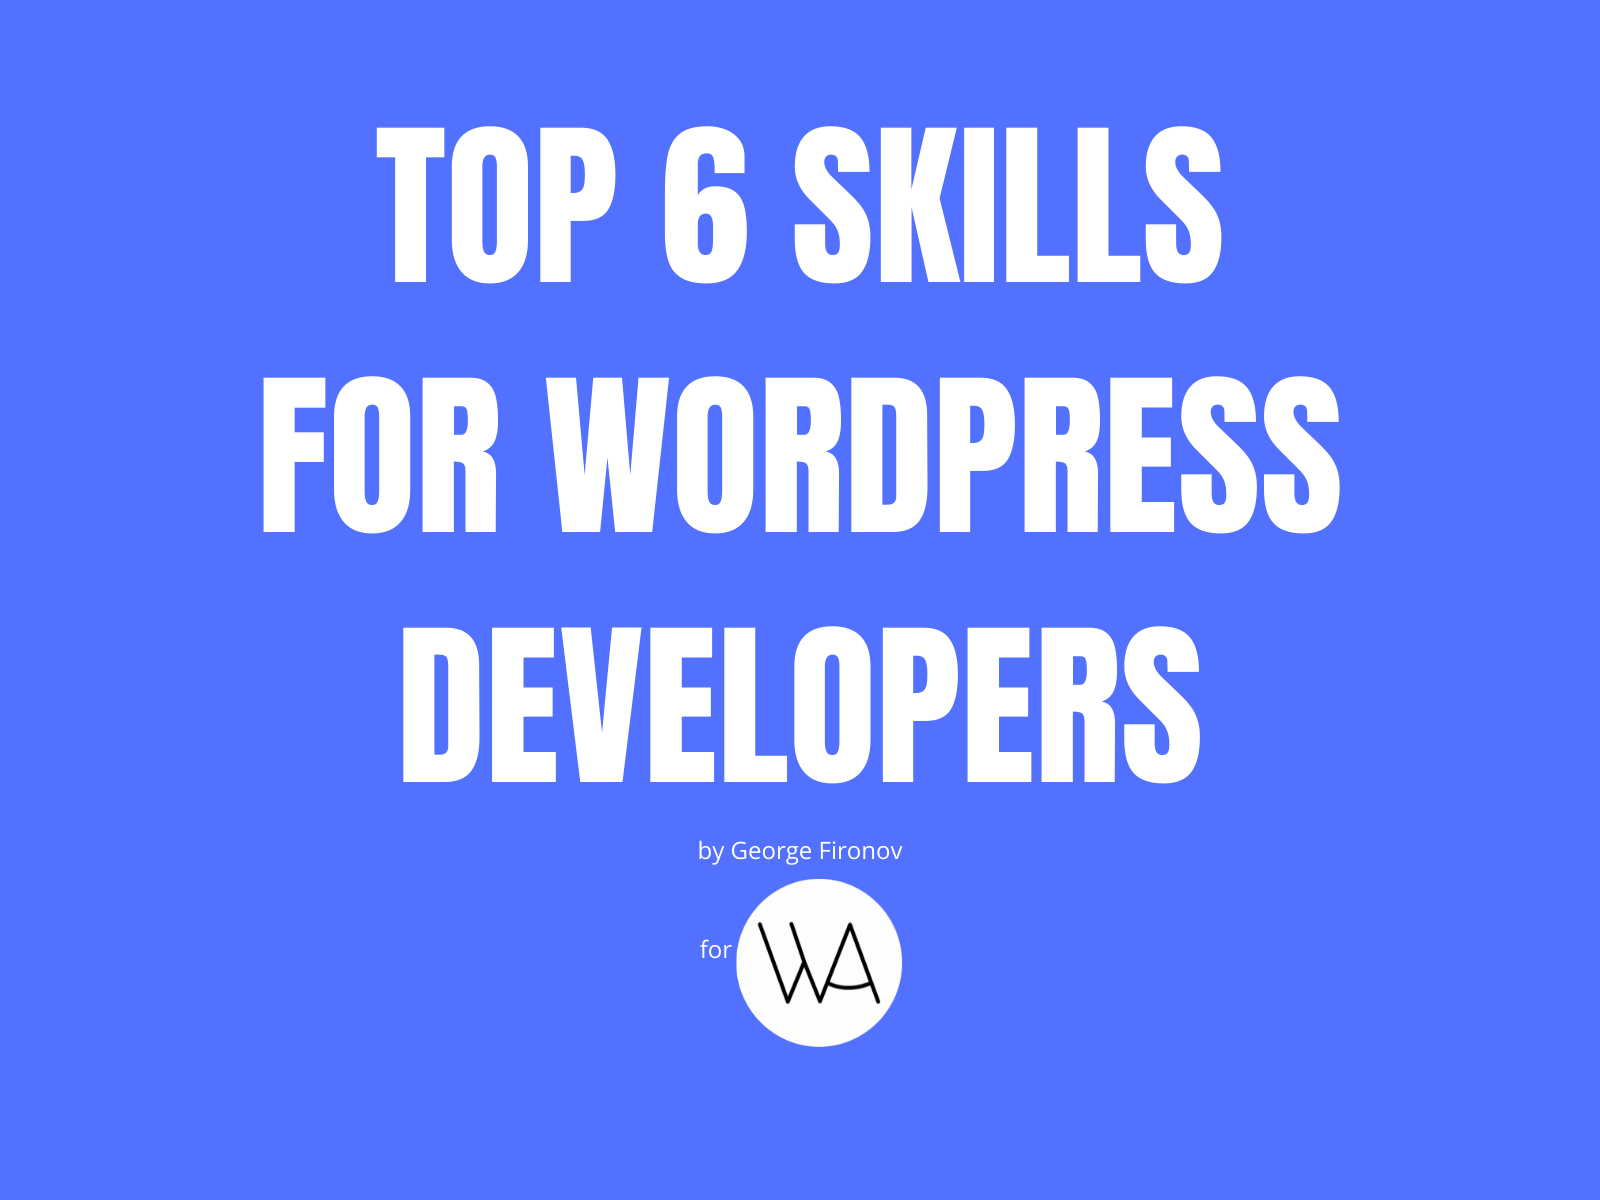 Skills for WordPress Developers